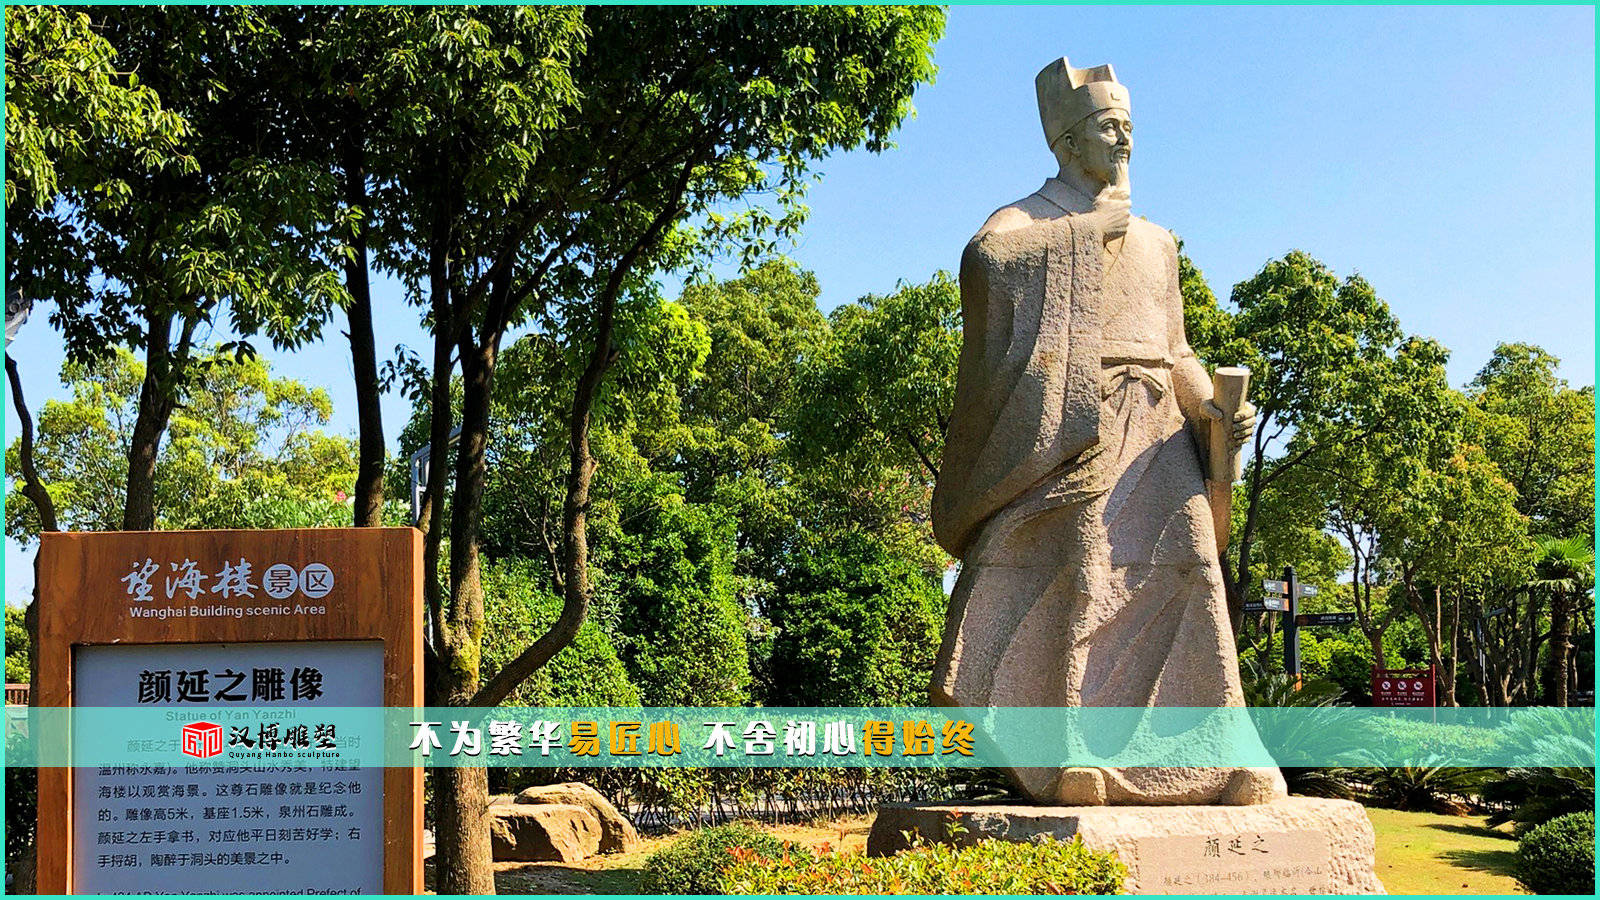 苹果铃声狗叫锋锋免费版:人物主题石雕,施耐庵中国四大名著之一《水浒传》的作者。